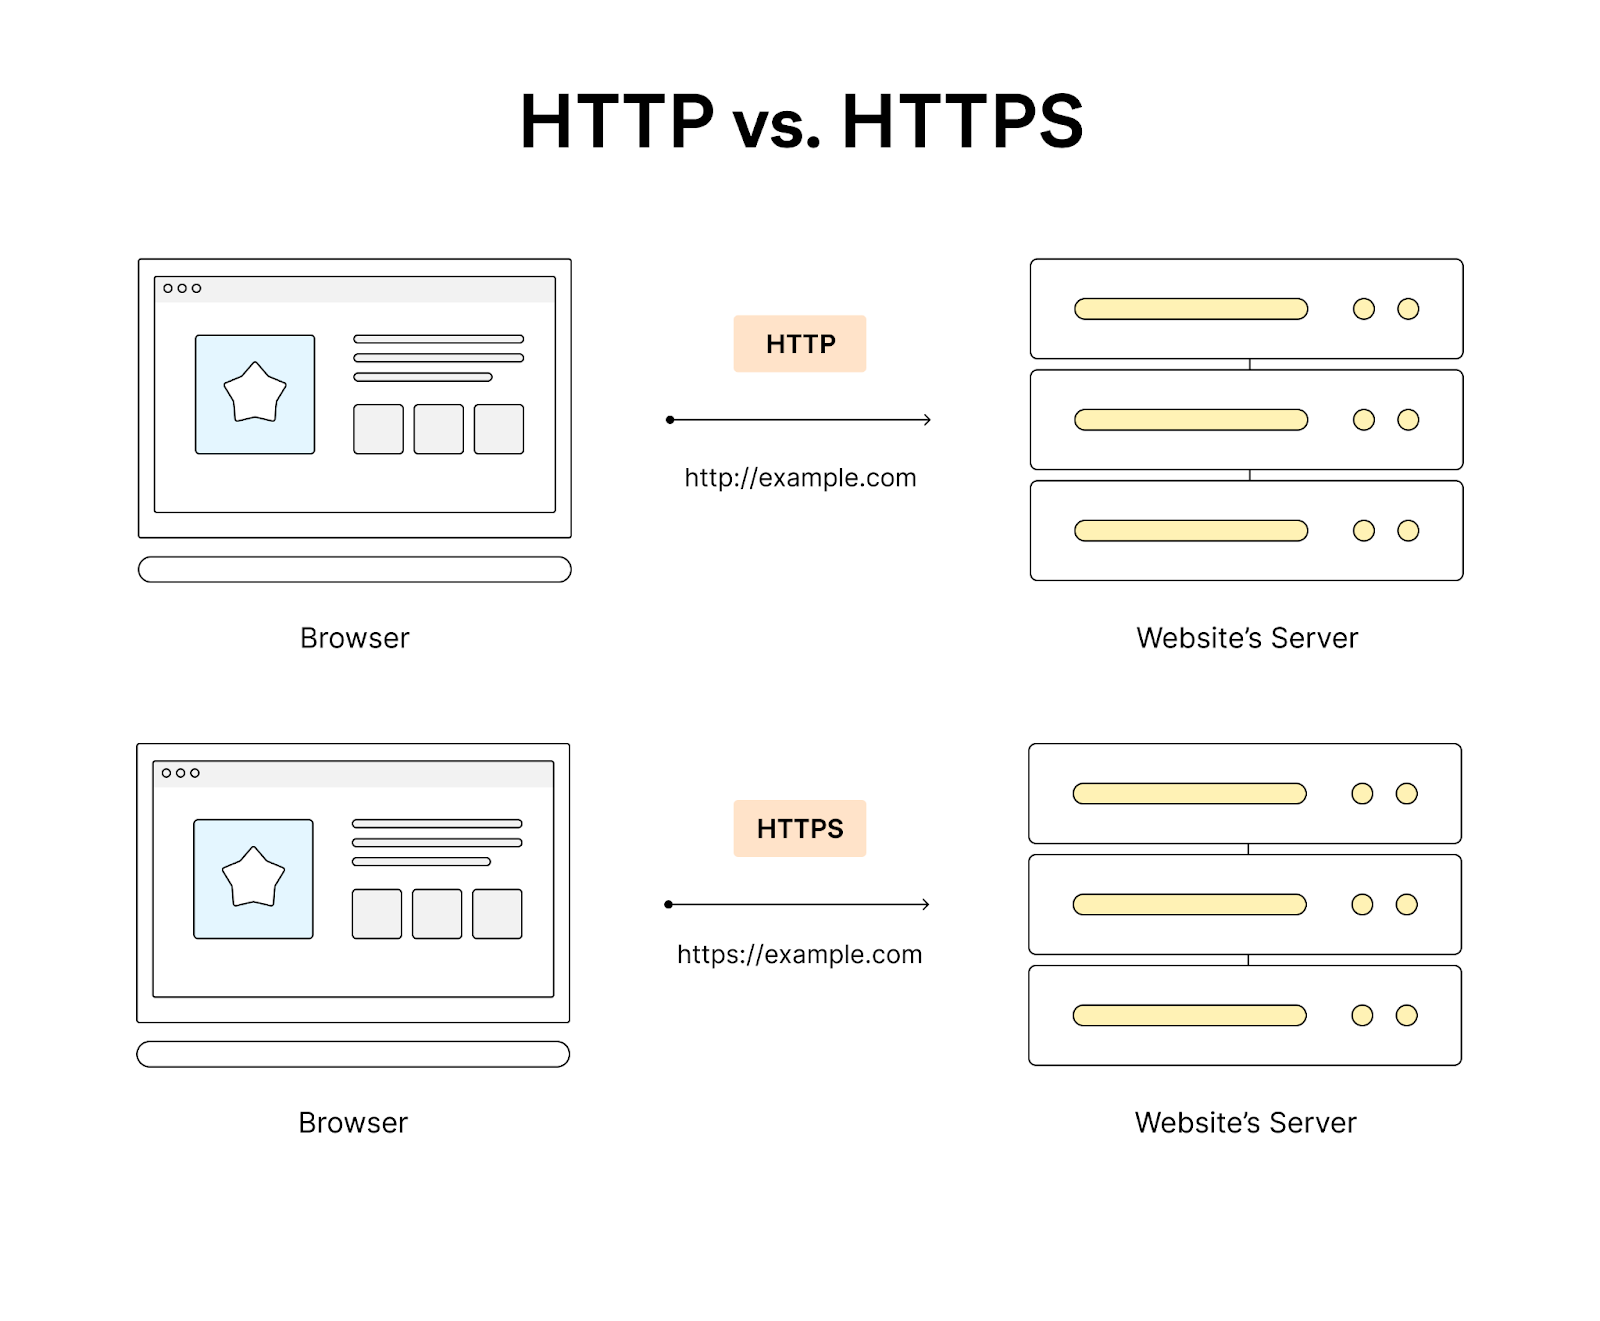 Les URL HTTP commencent par « http://. », tandis que les URL HTTPS commencent par « https:// ».